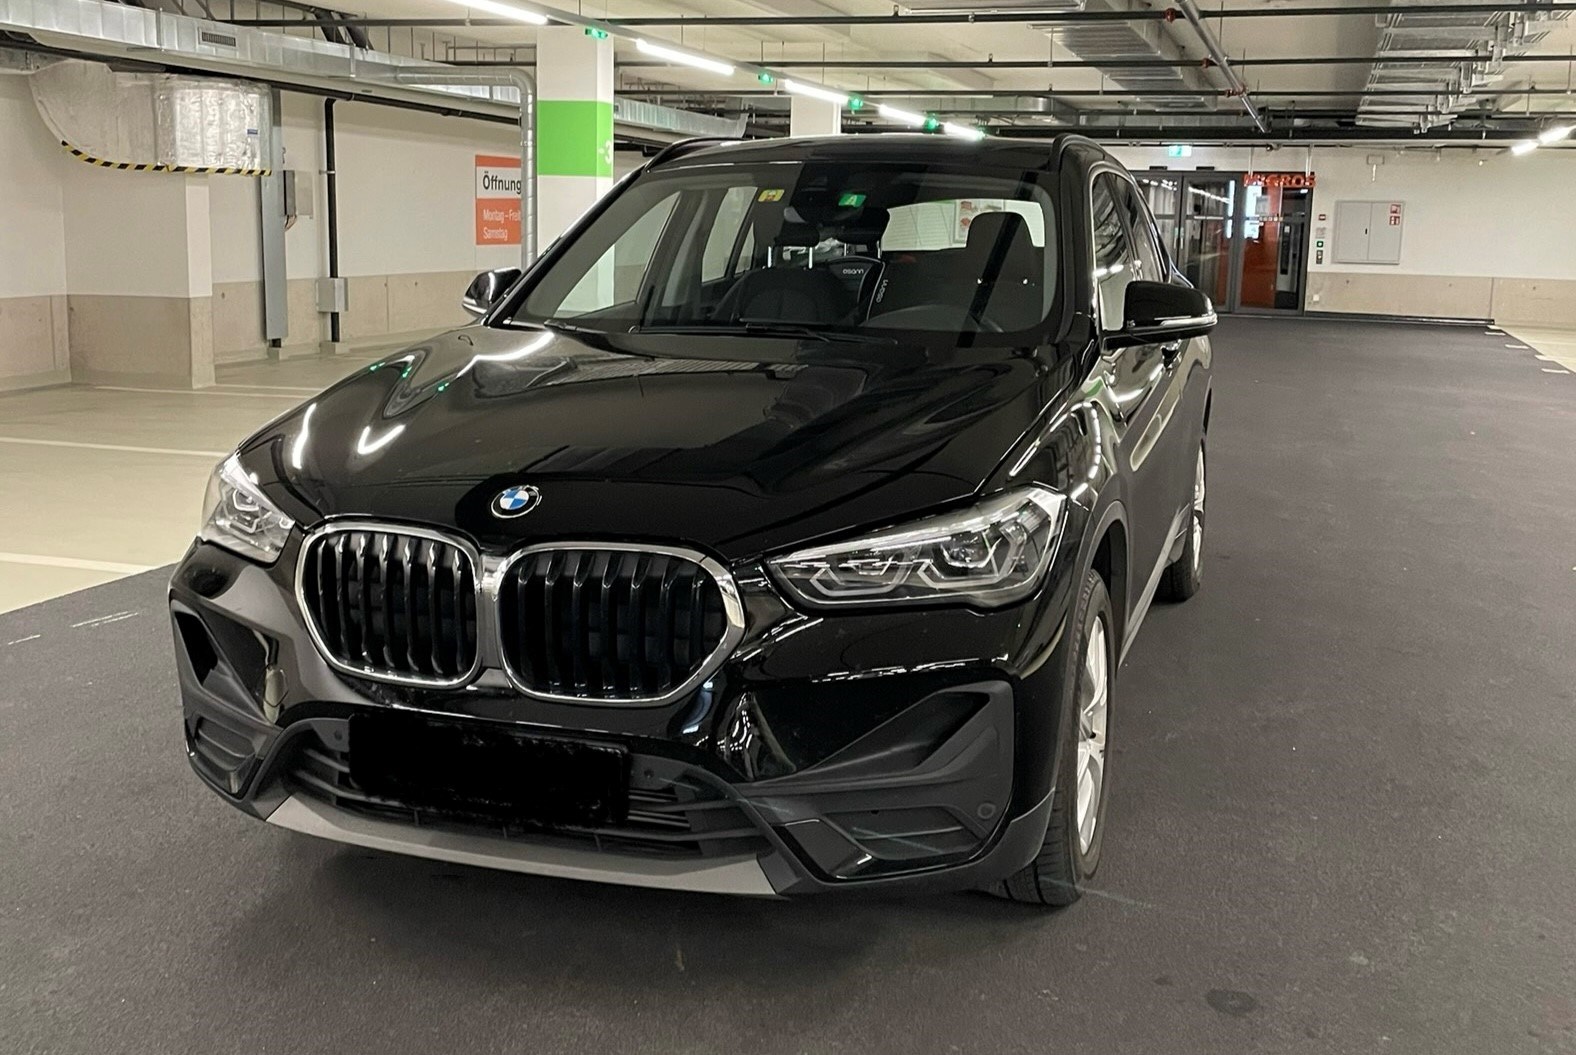 BMW X1 sDrive 18i